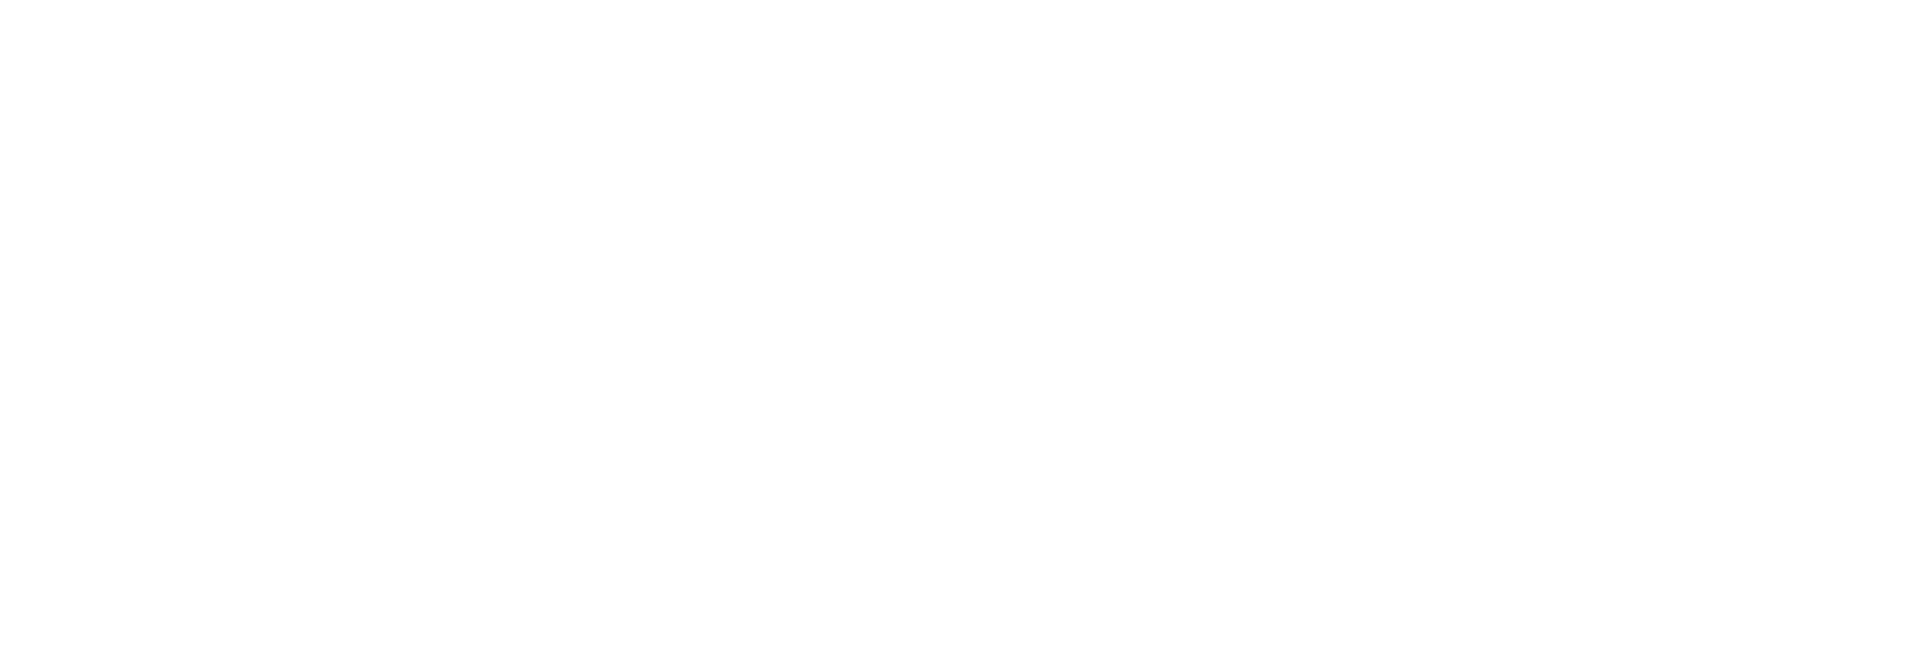 CMMTQ_Logo_H_Blanc